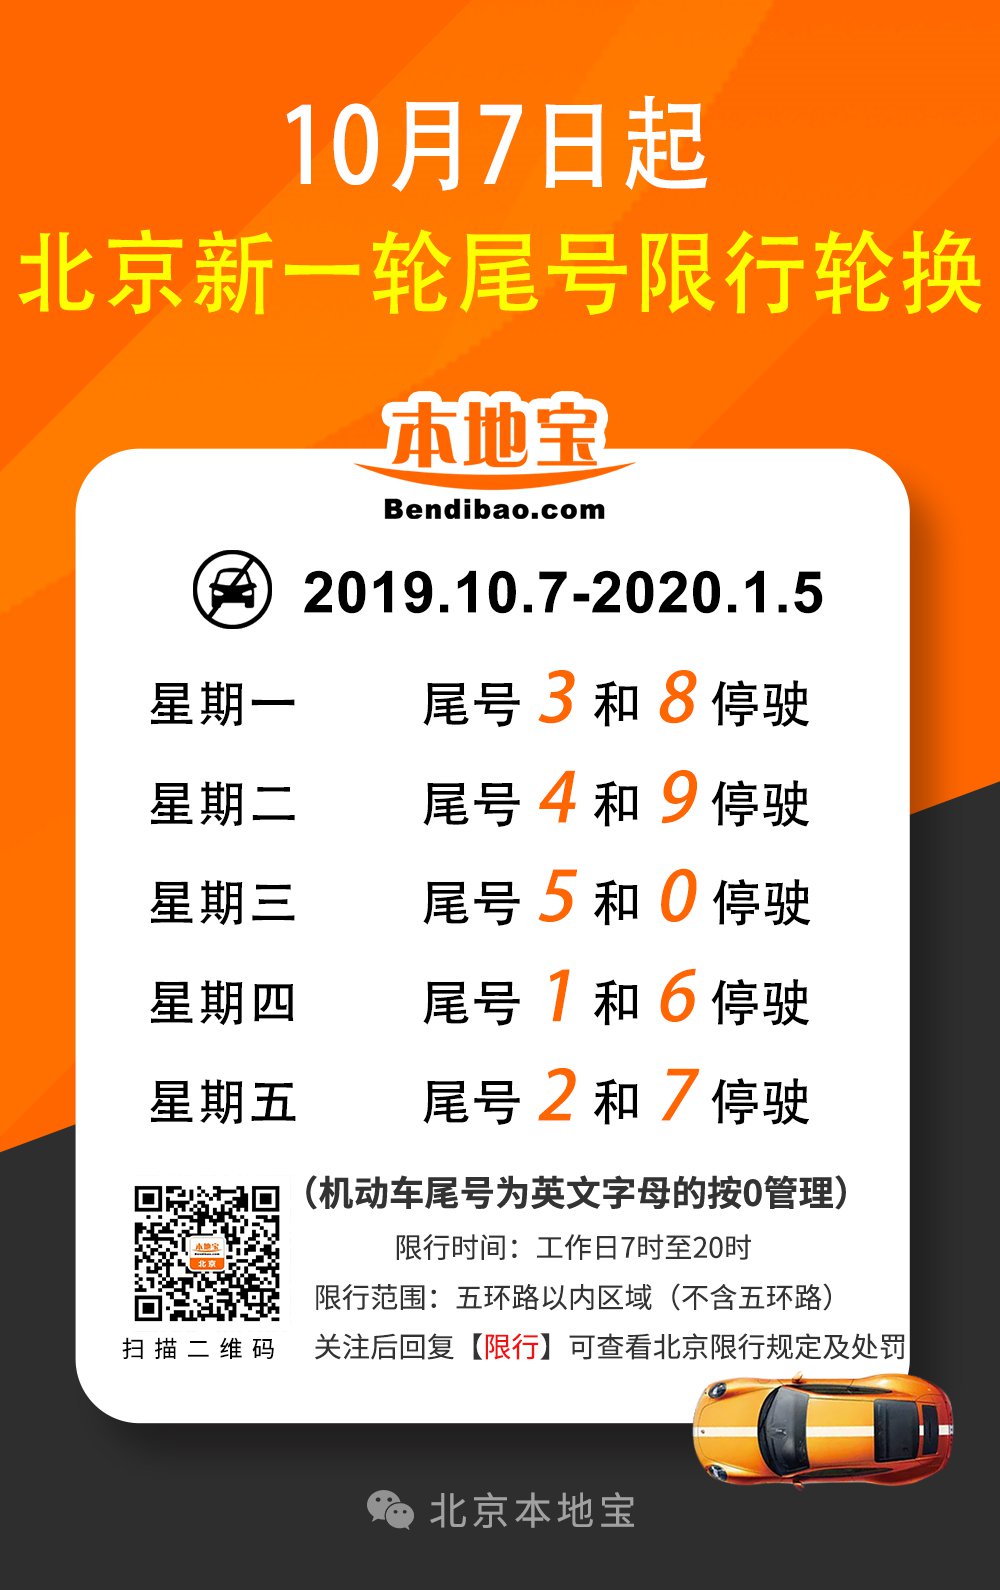 2019年10月7日—2020年1月5日北京尾号限行规定细则